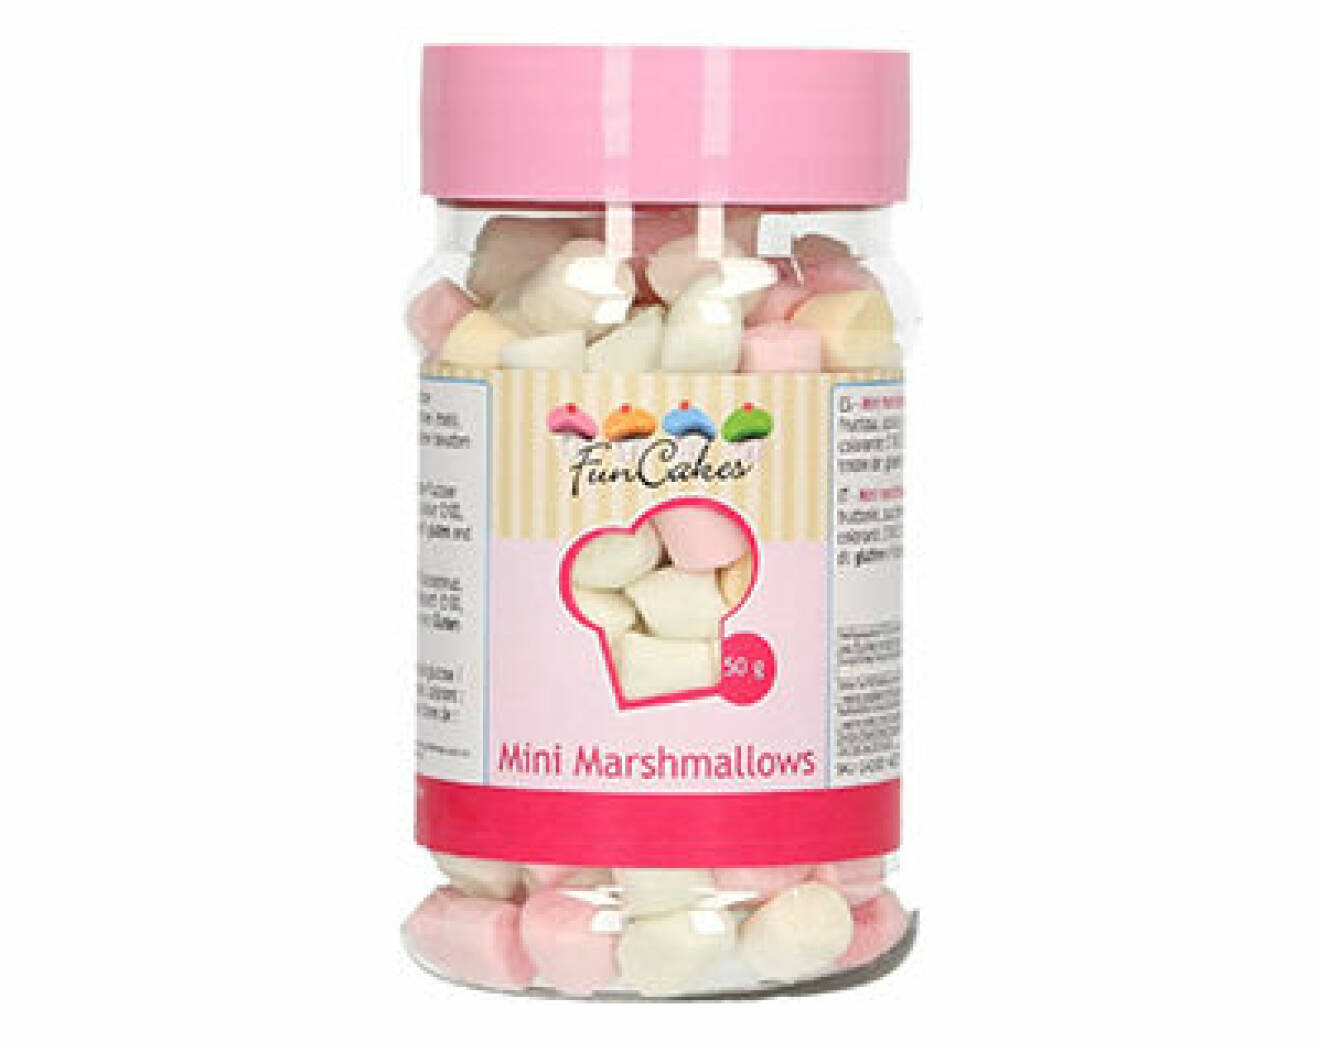 minimarshmallows för chokladbomb